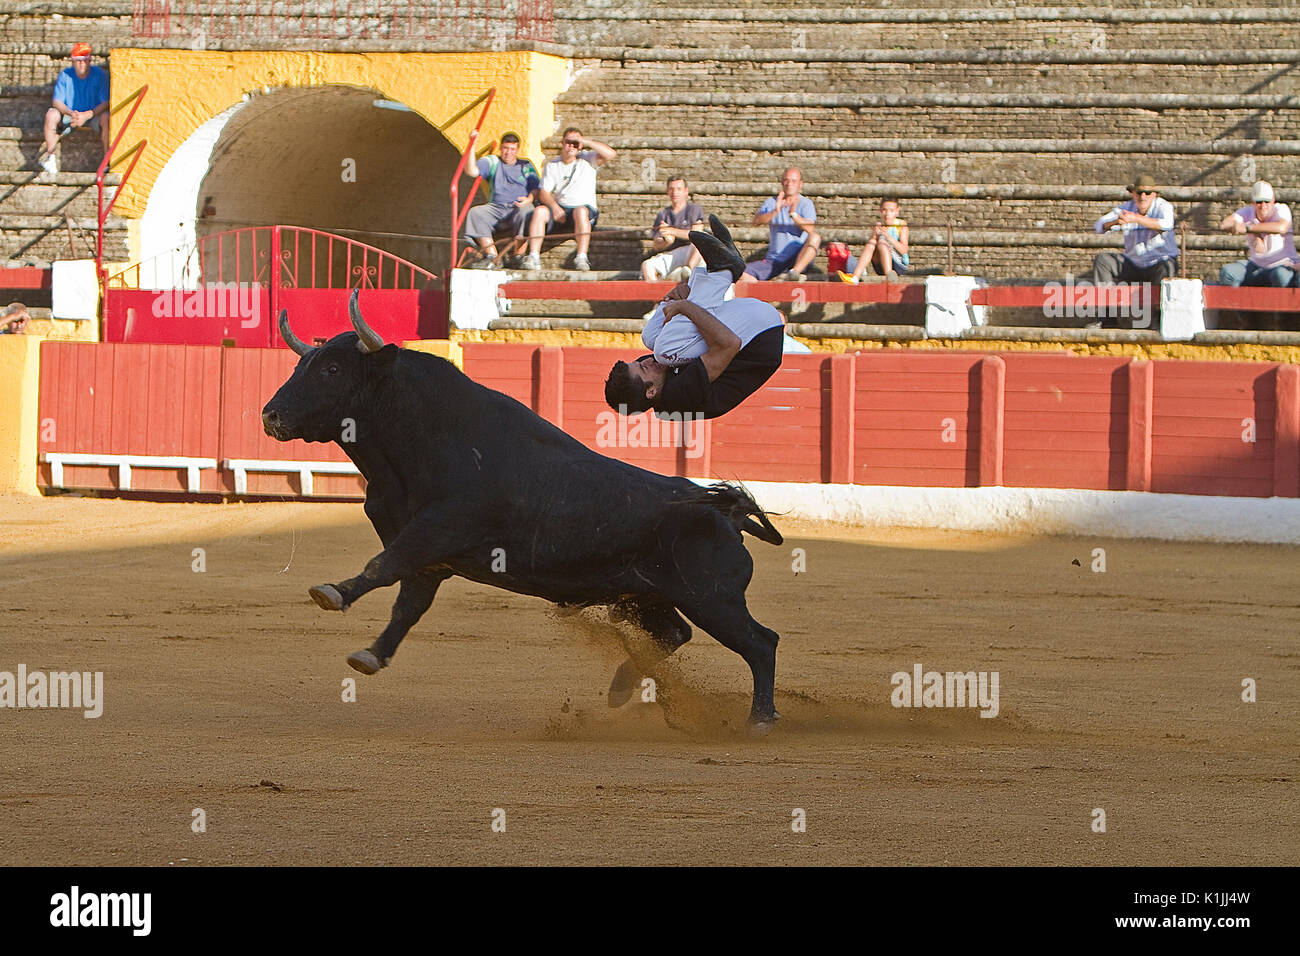 Lo spagnolo recortador eseguita con competenza piroette prima l'assalto di brave bull o giovenca come sono tagli, saltando o lato antitesi ho Foto Stock